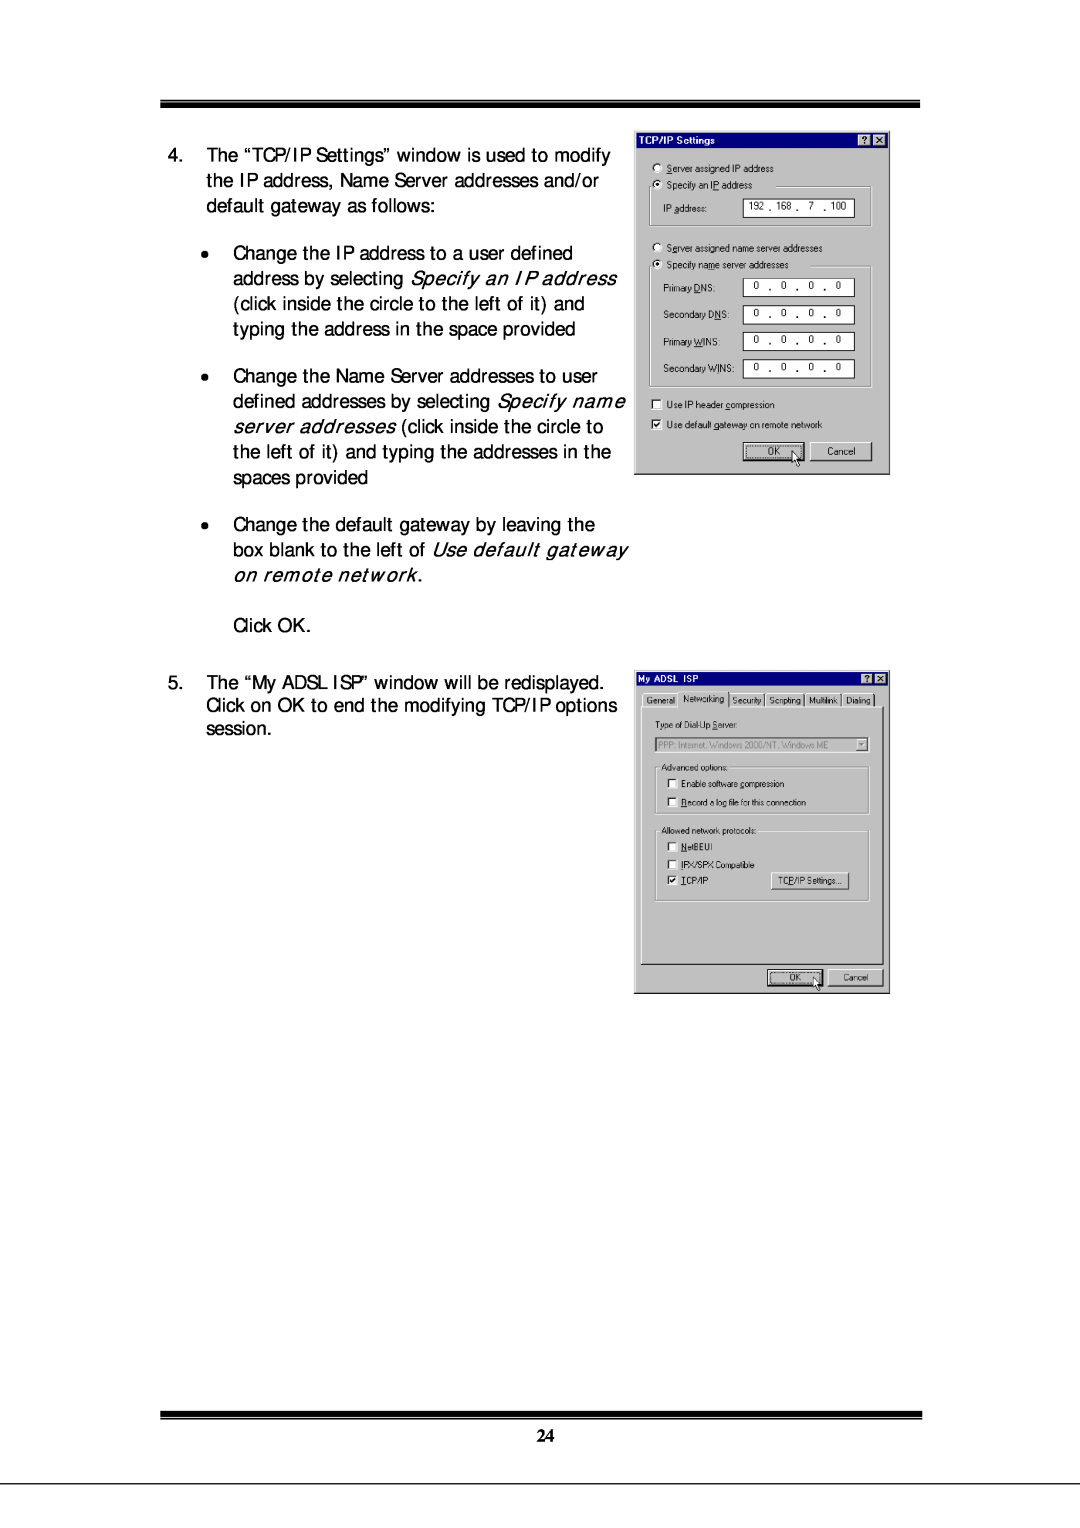 Microsoft EA900 manual Click OK 